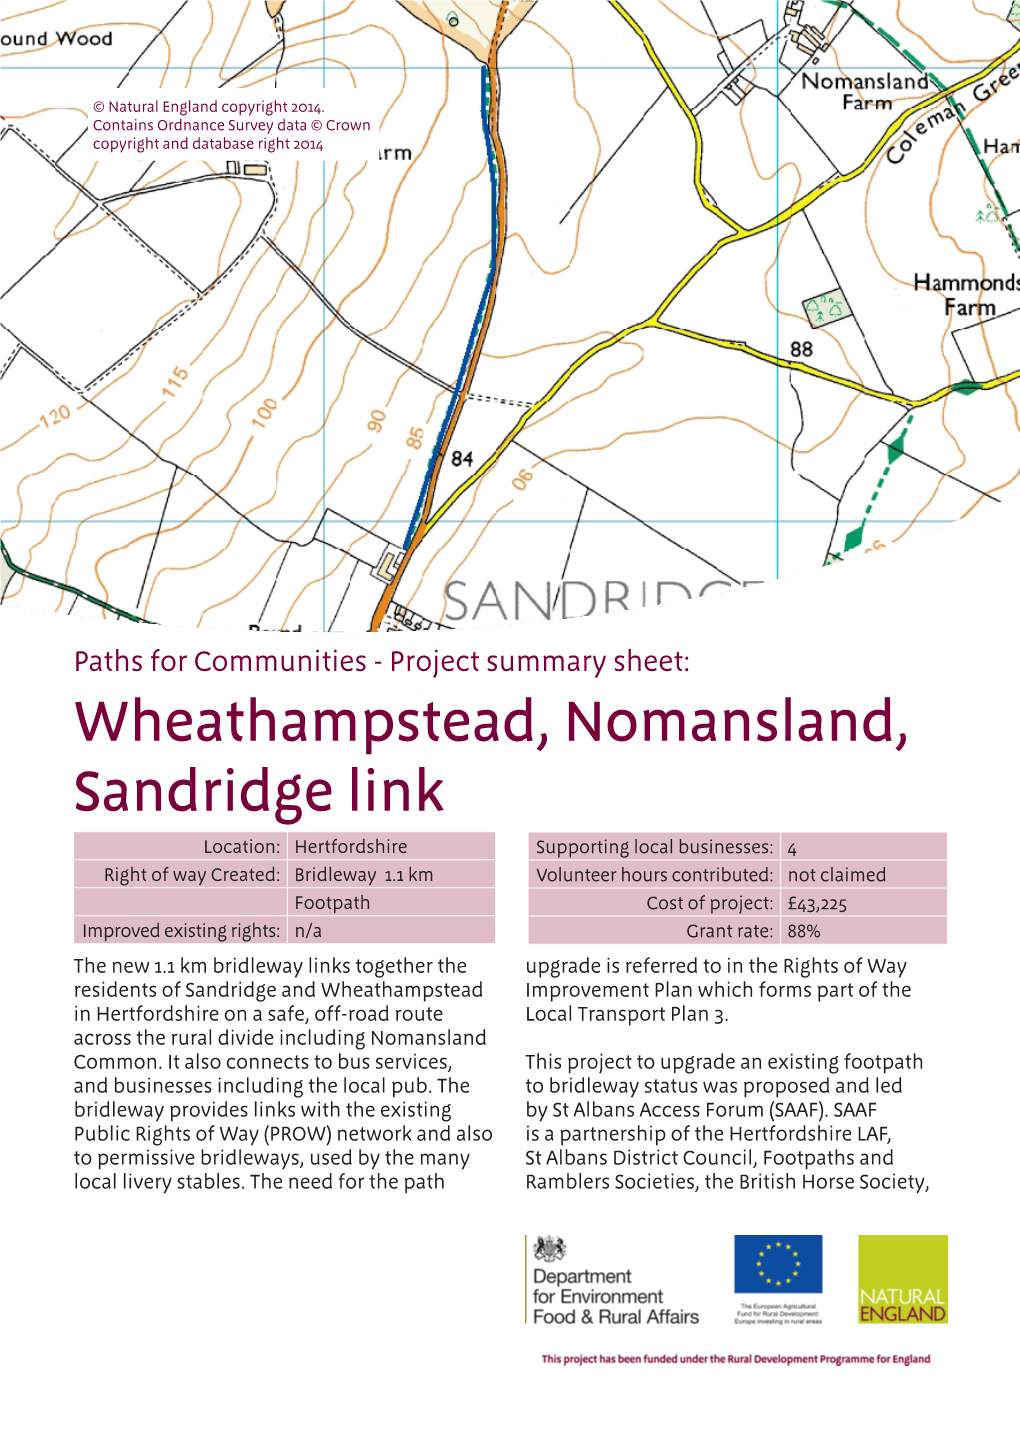 Wheathampstead, Nomansland, Sandridge Link